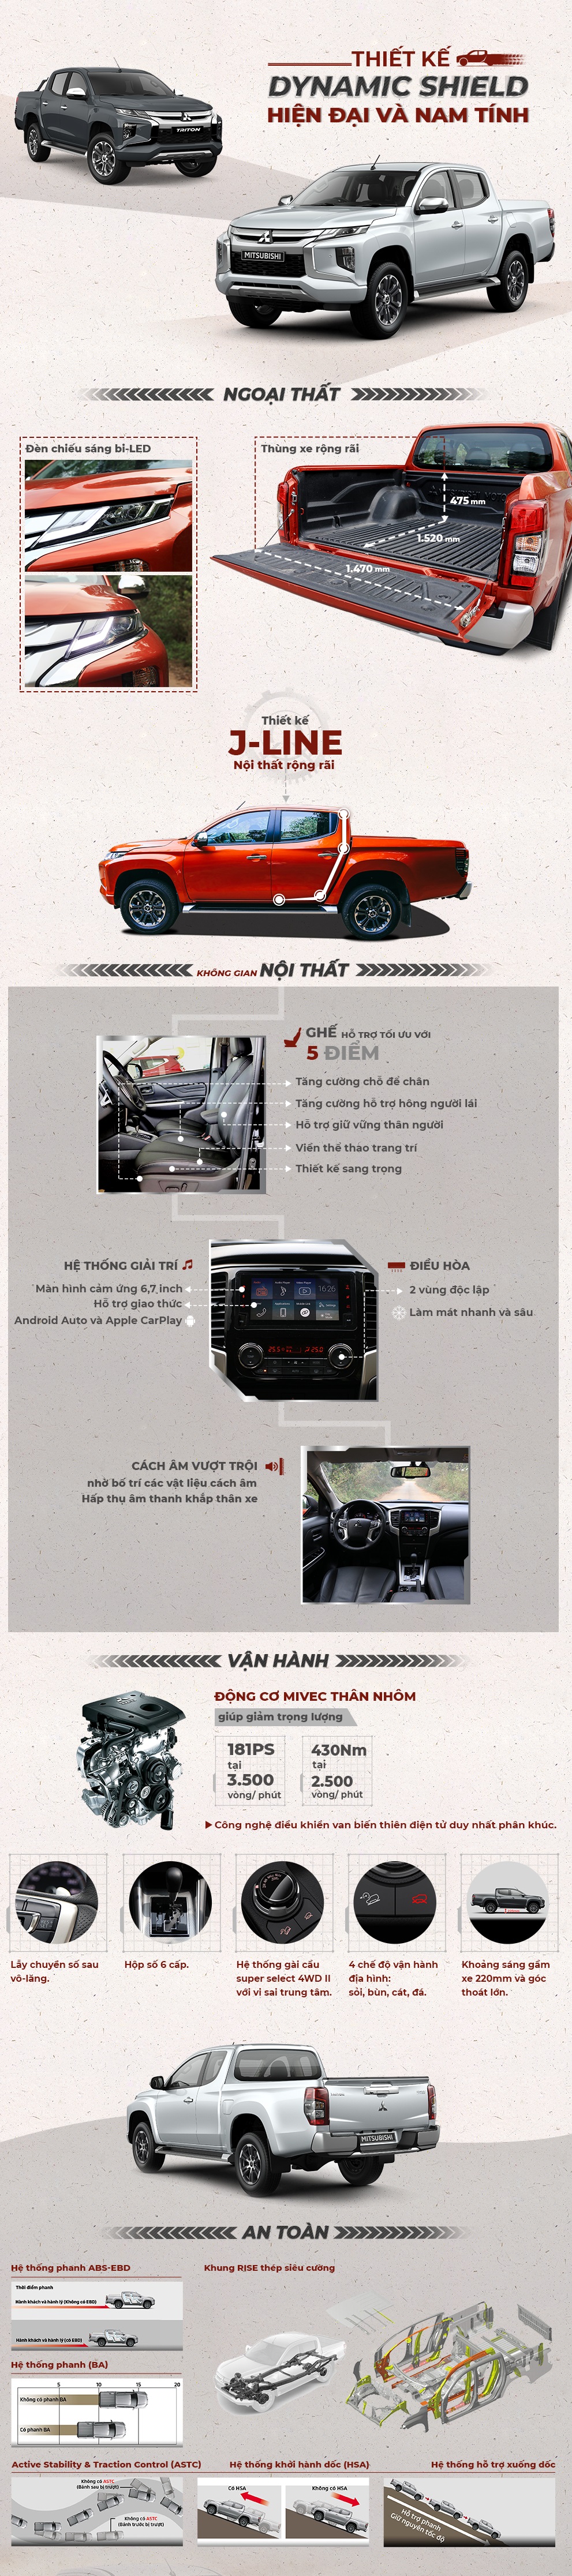 Những ưu điểm nổi bật trên Mitsubishi Triton 2019